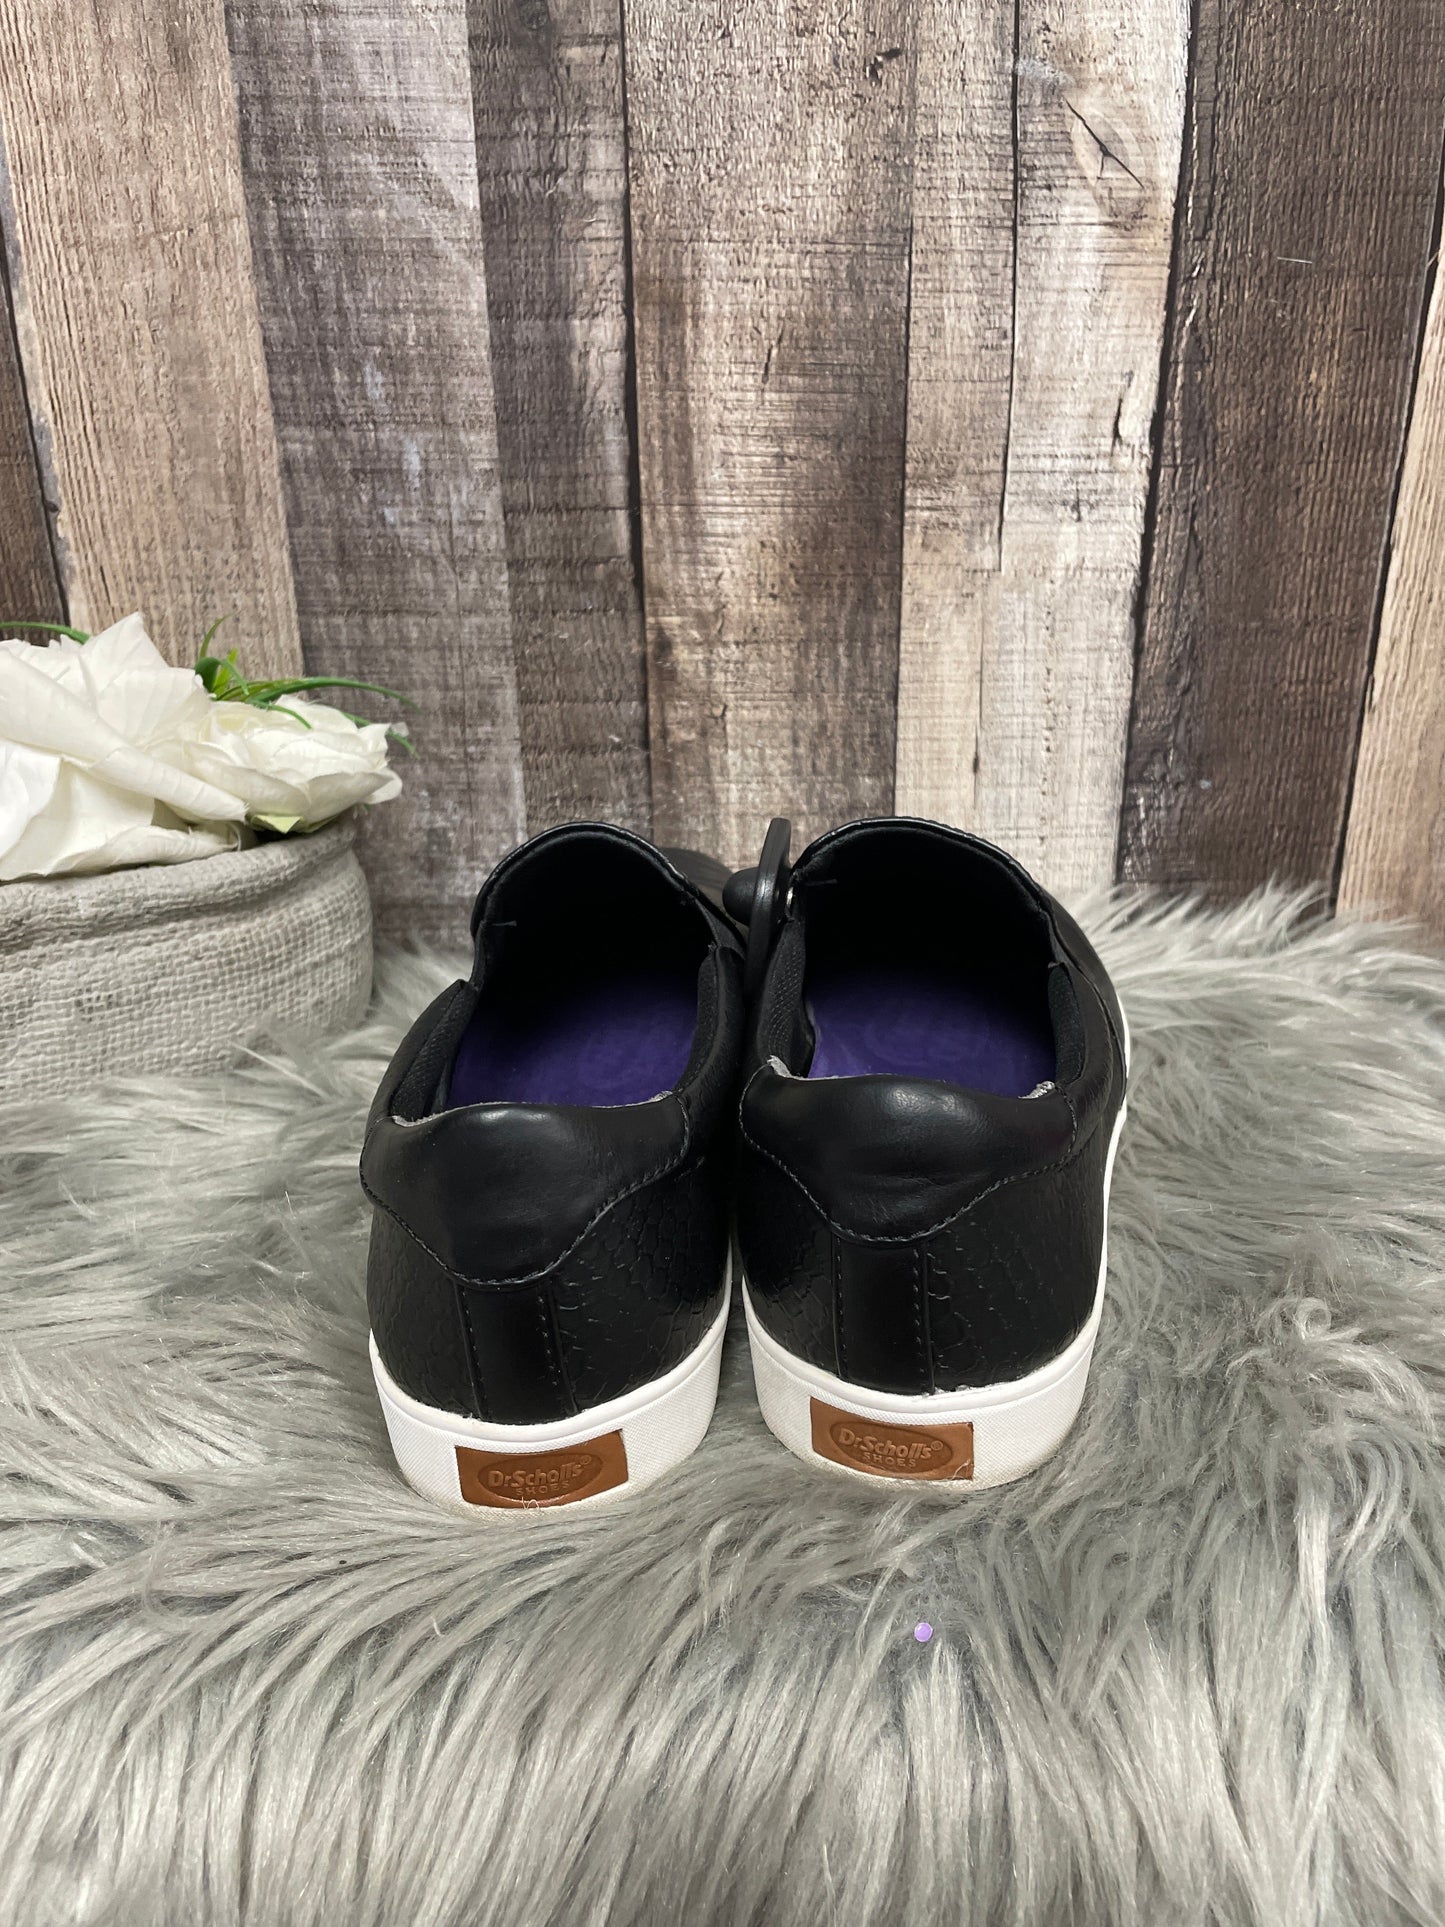 Black & White Shoes Flats Dr Scholls, Size 10